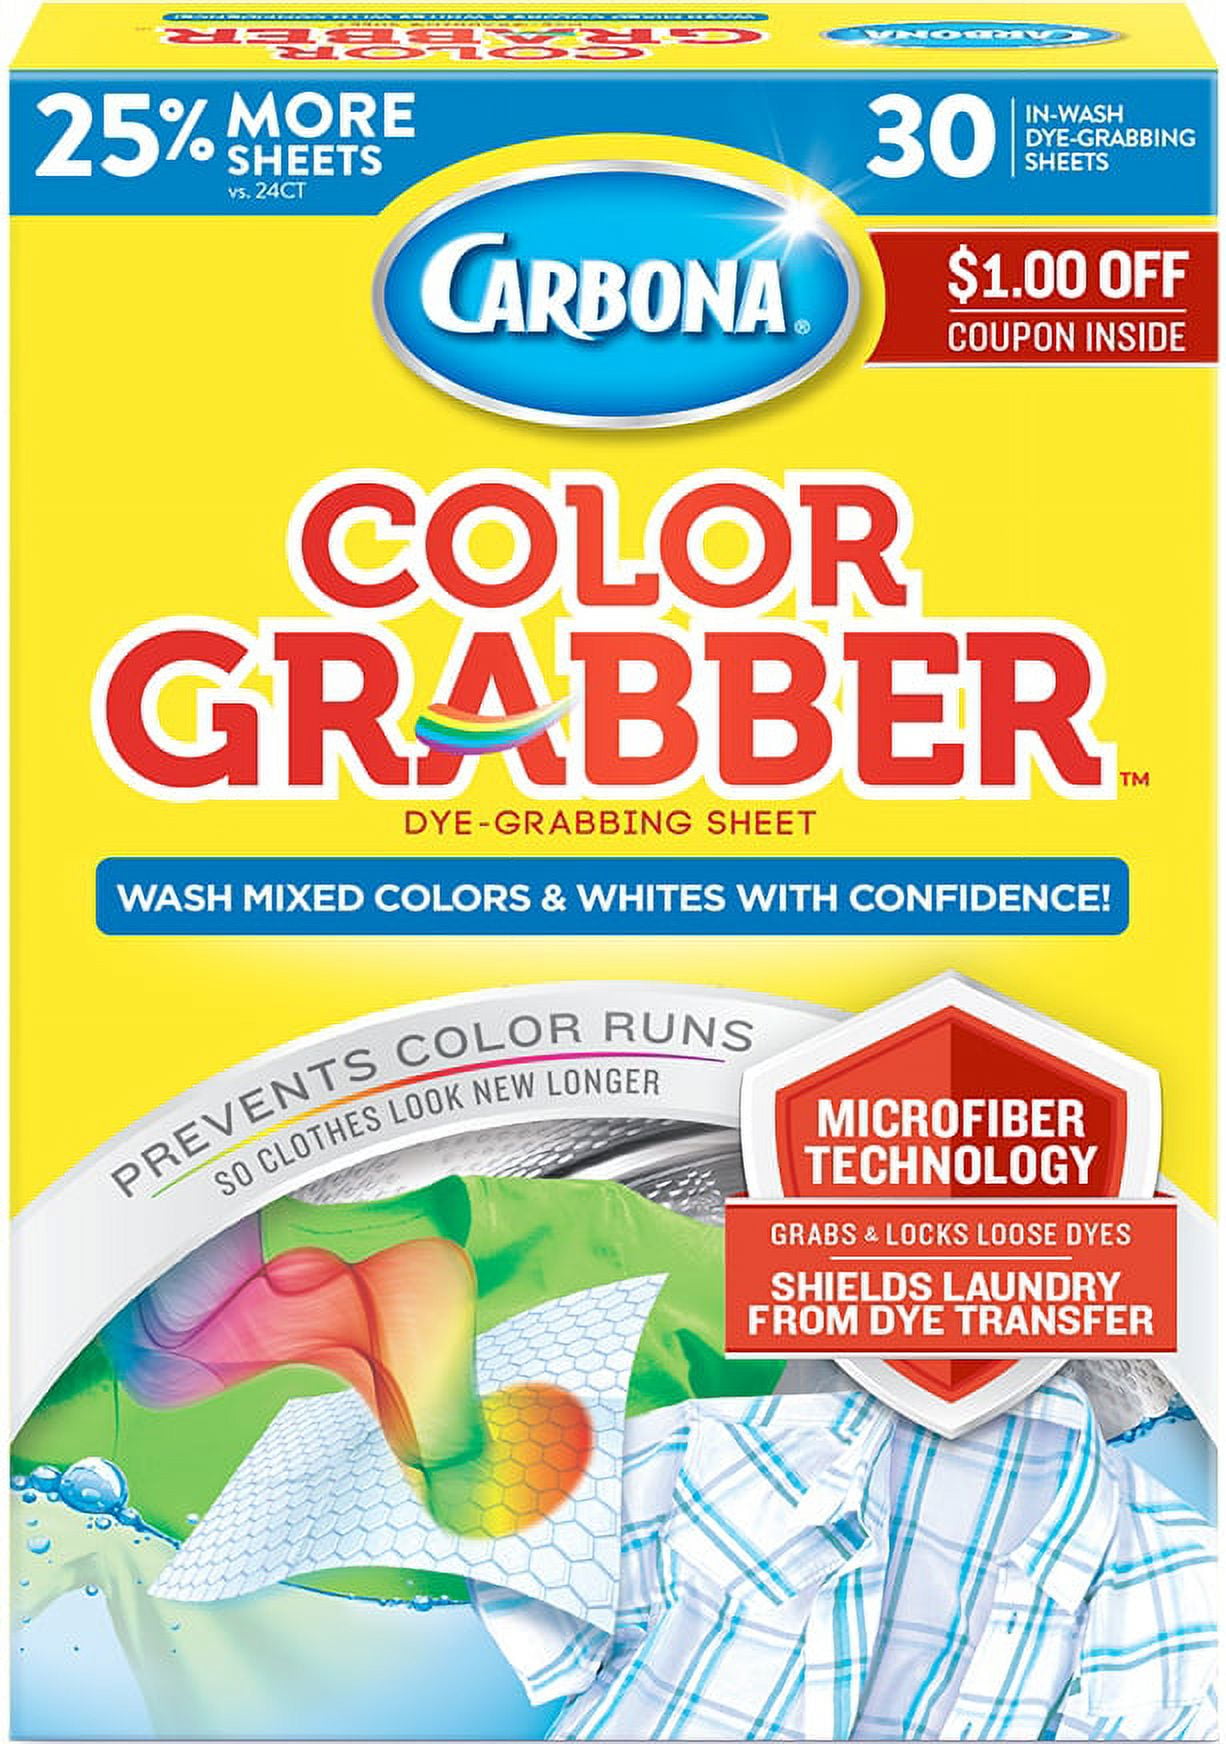 Carbona Color Grabber Dye-Grabbing Sheet, In-Wash - 30 sheets